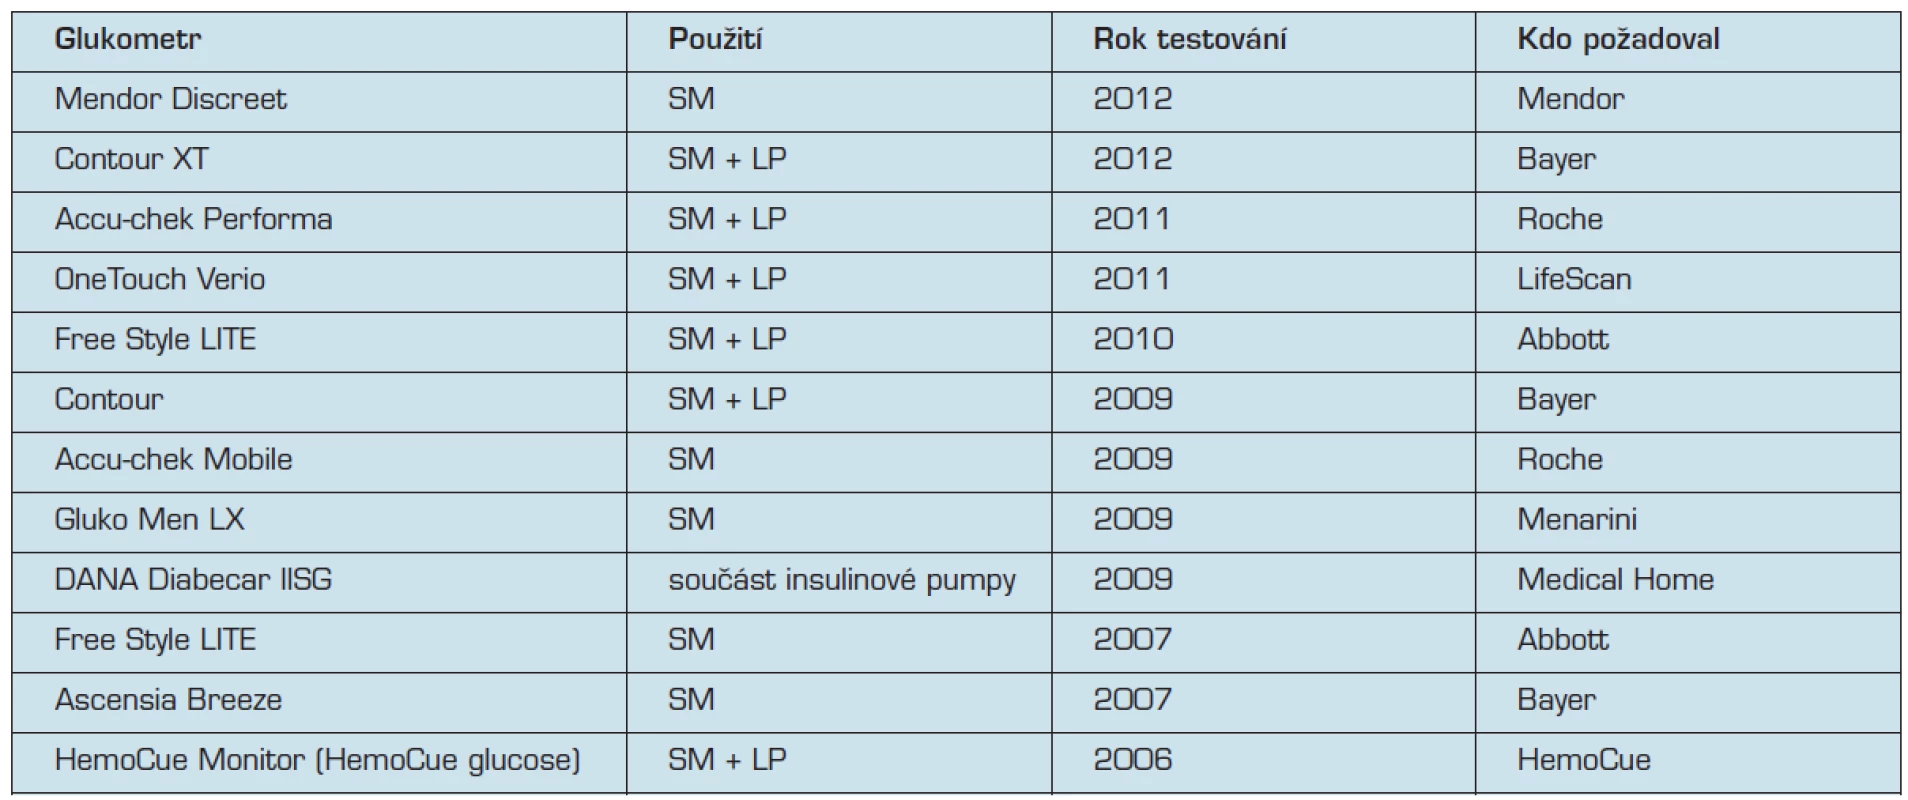 Seznam ve SKUP úspěšné testovaných glukometrů od roku 2006.